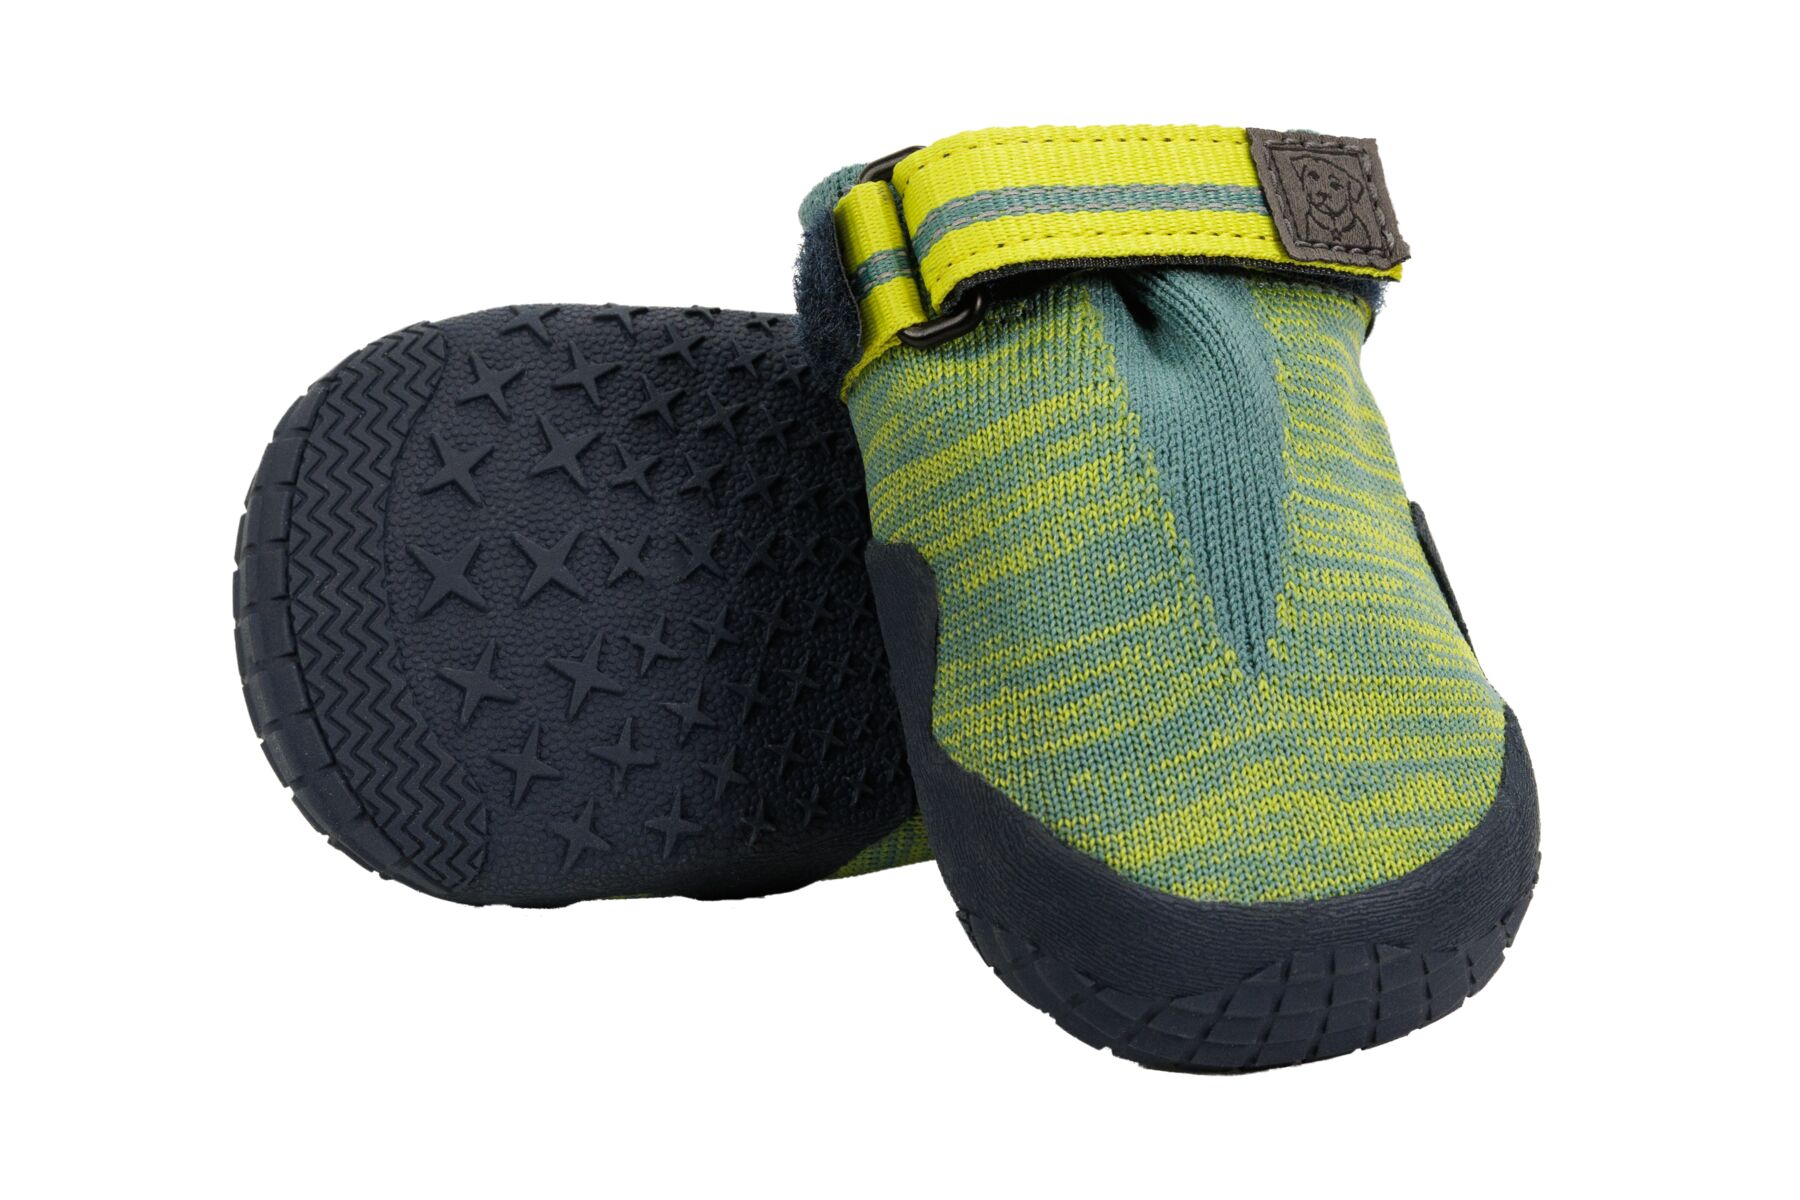 Boty pro psy Hi & Light™ Trail Shoes 83 mm, River Rock Green (zelená)